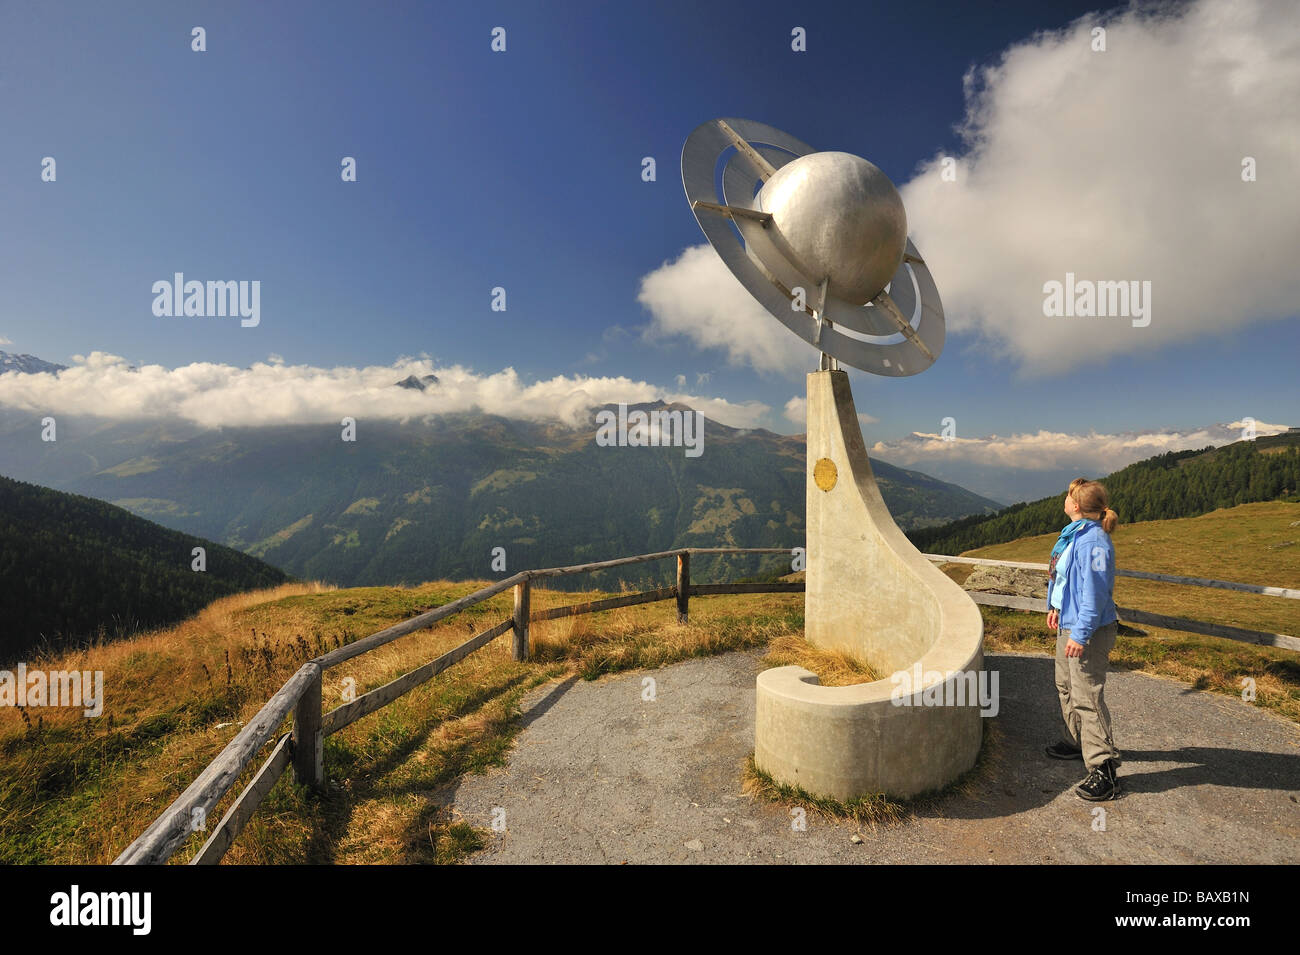 Une femme hiker admire une sculpture représentant les planètes Saturne le sentier (Sentier des planetes) dans les Alpes suisses. Banque D'Images